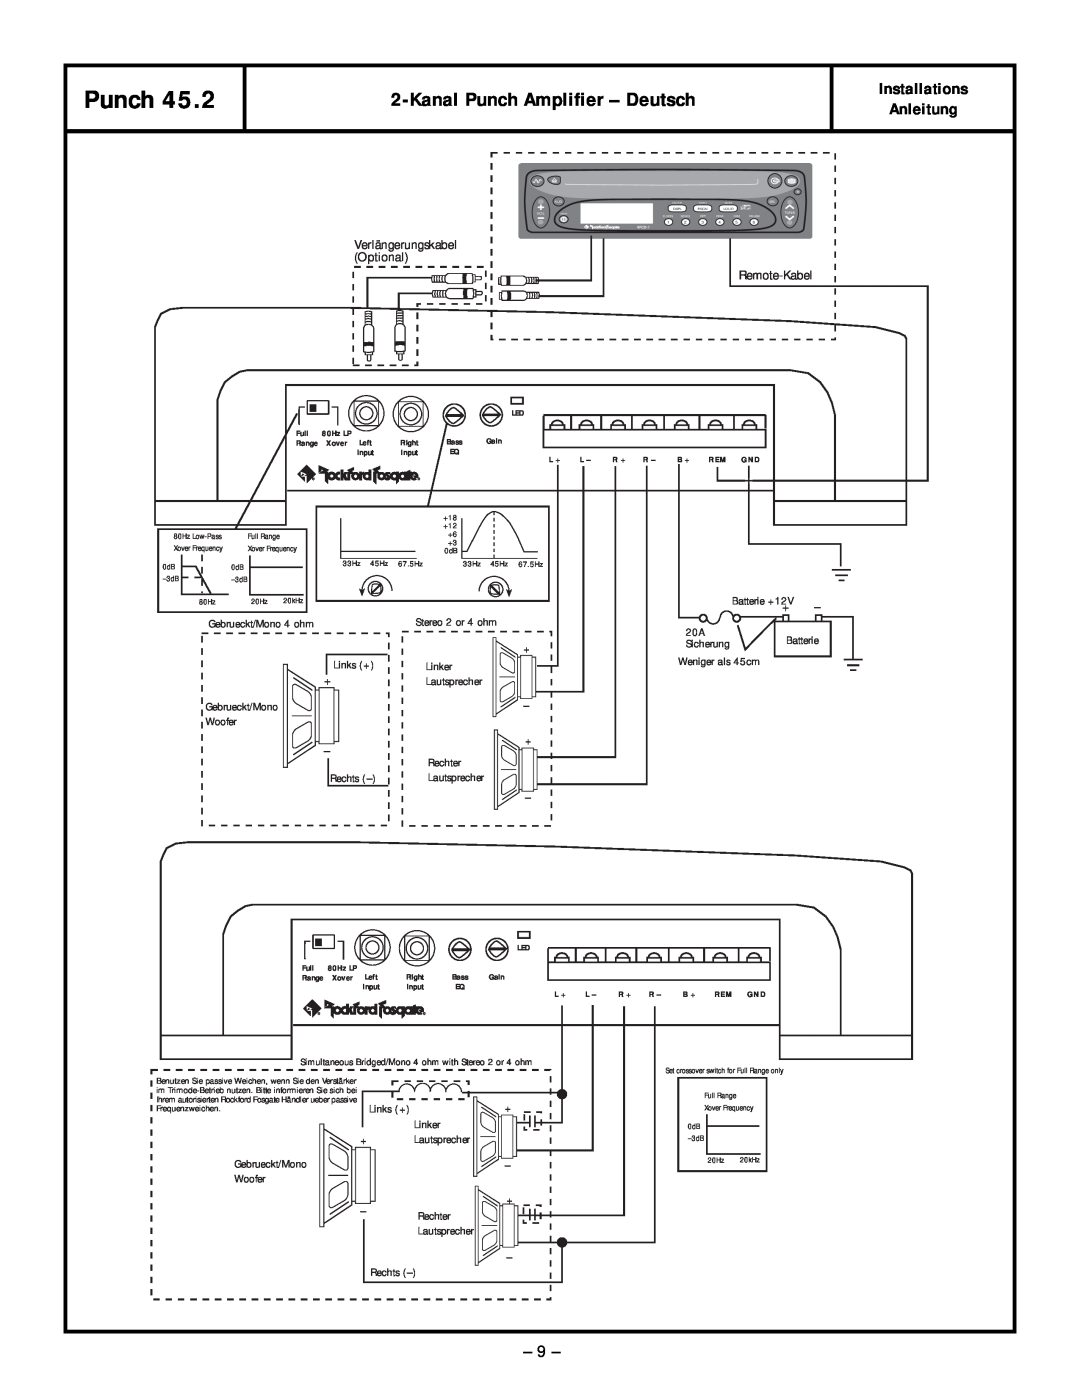 Rockford Fosgate 45.2 manual KanalPunch Amplifier - Deutsch, Installations Anleitung 